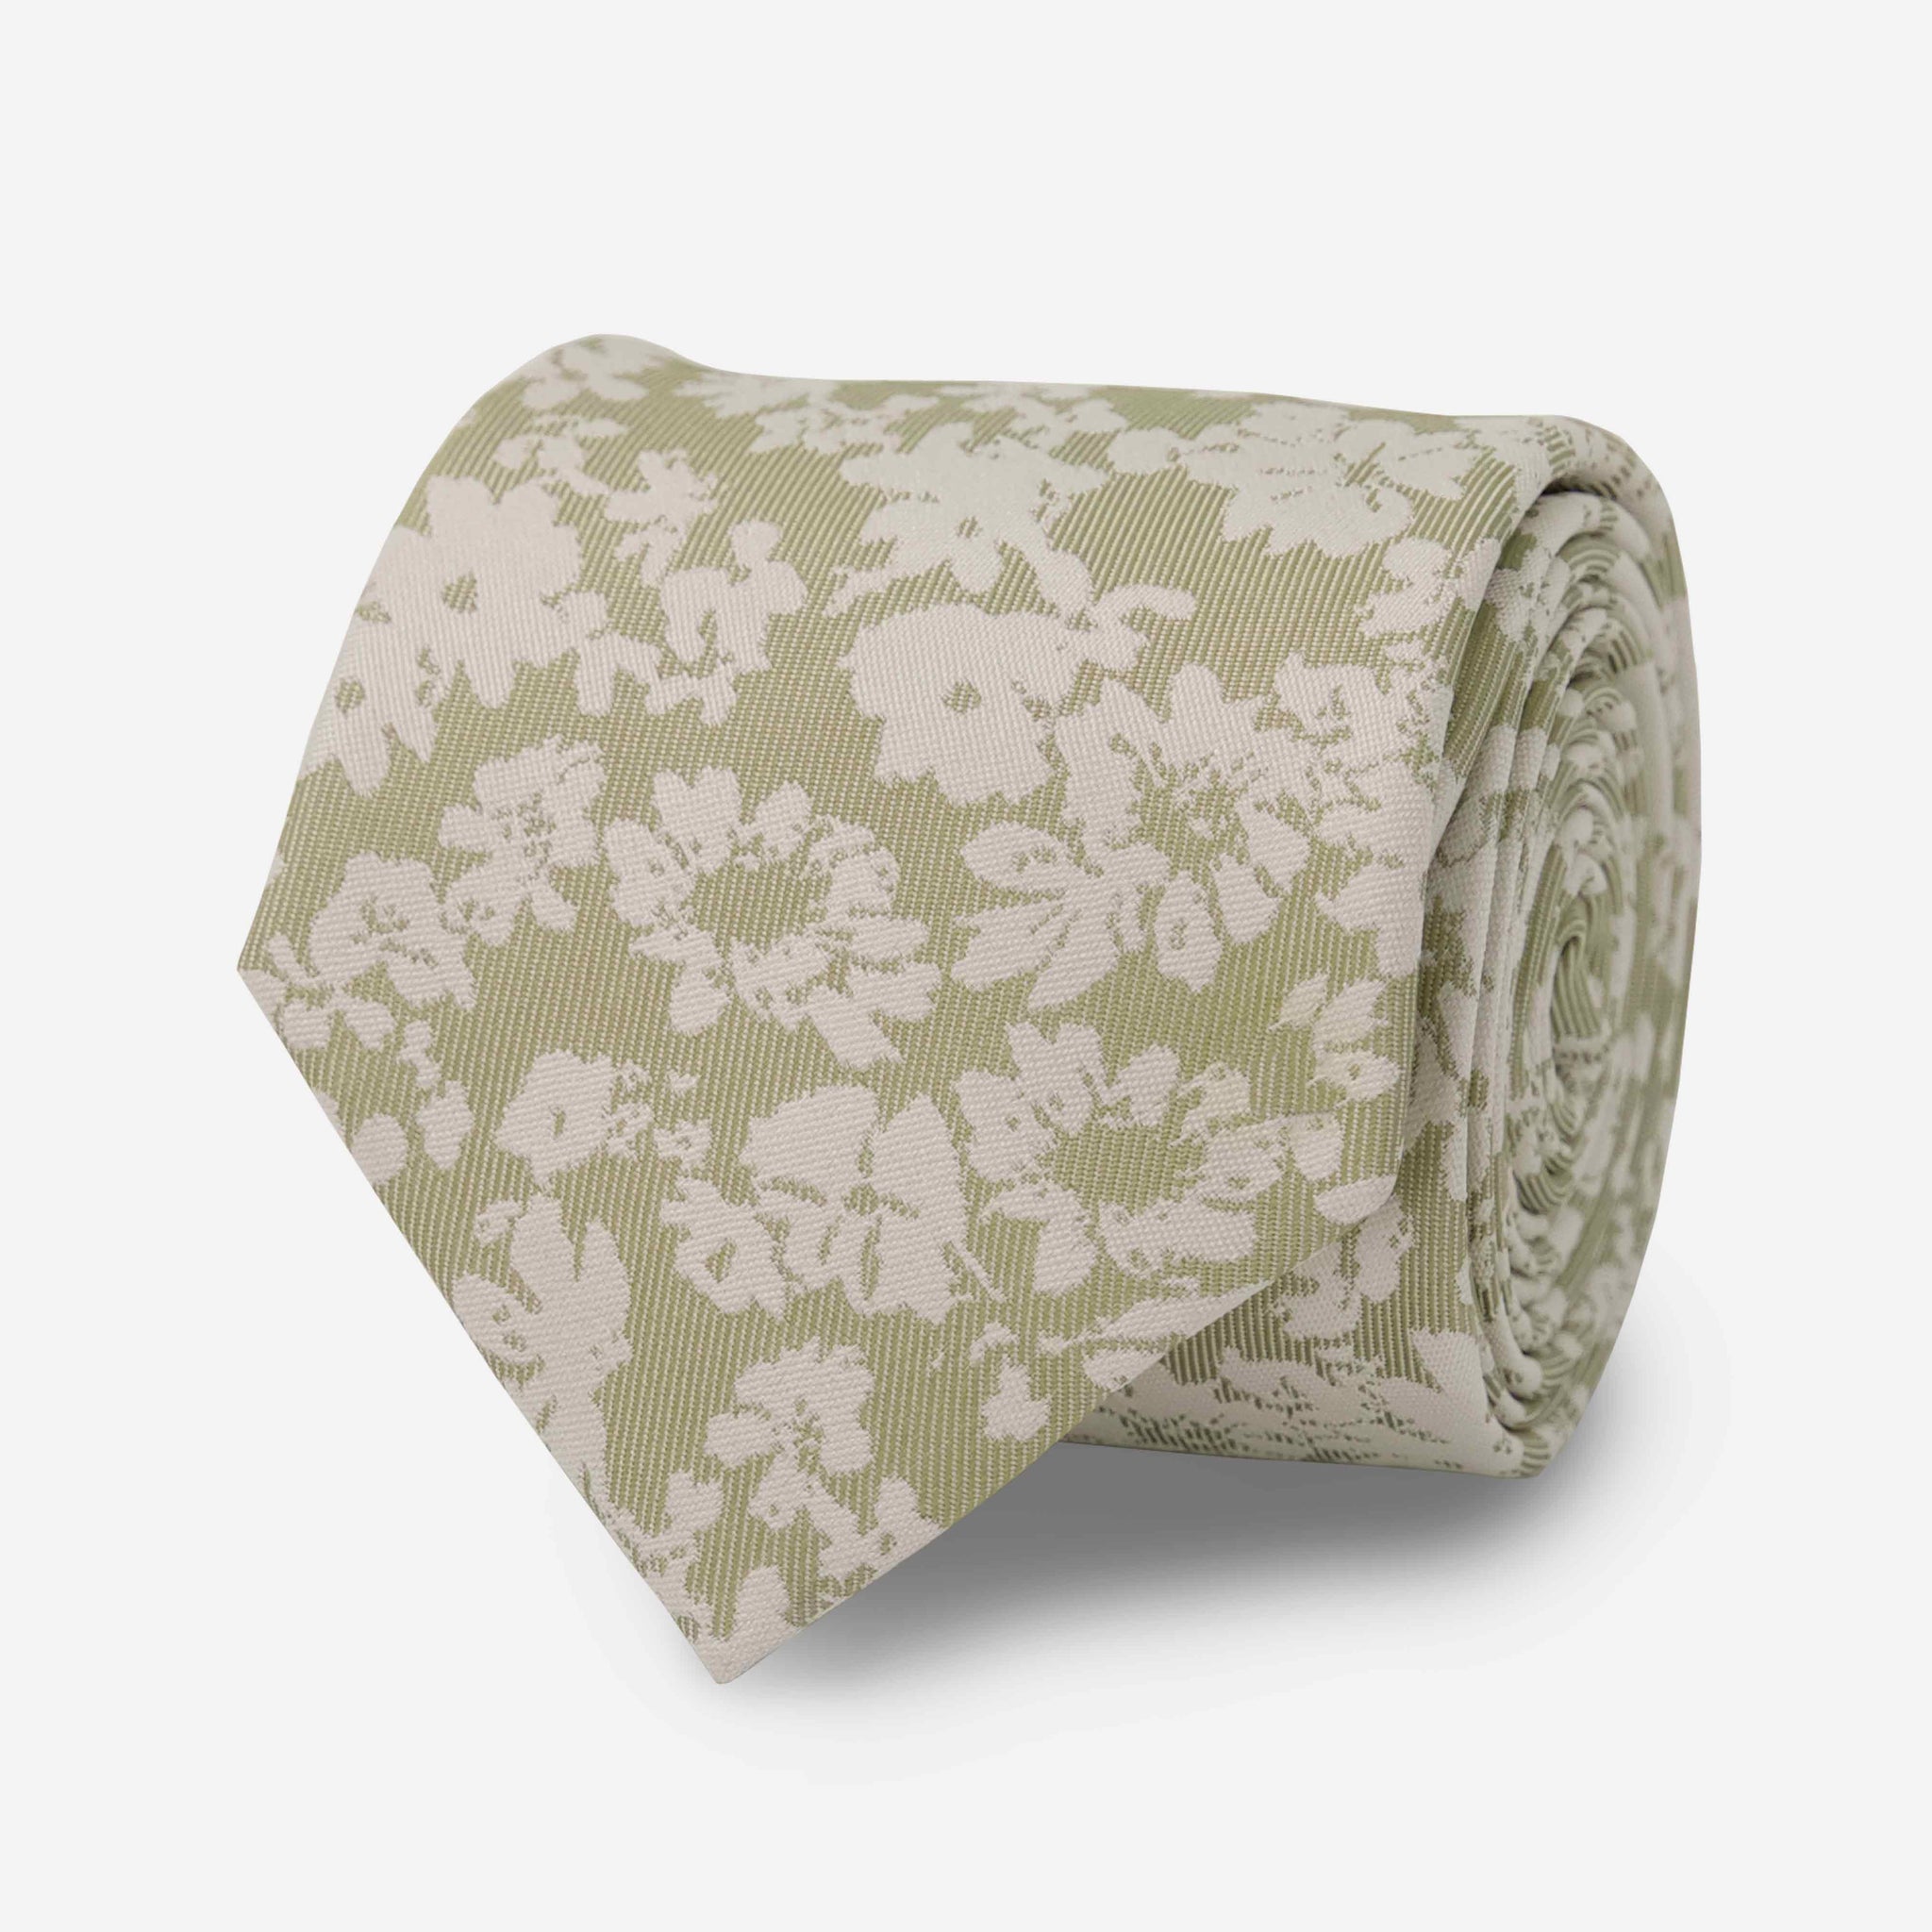 Incognito Floral Sage Green Tie by Tie Bar